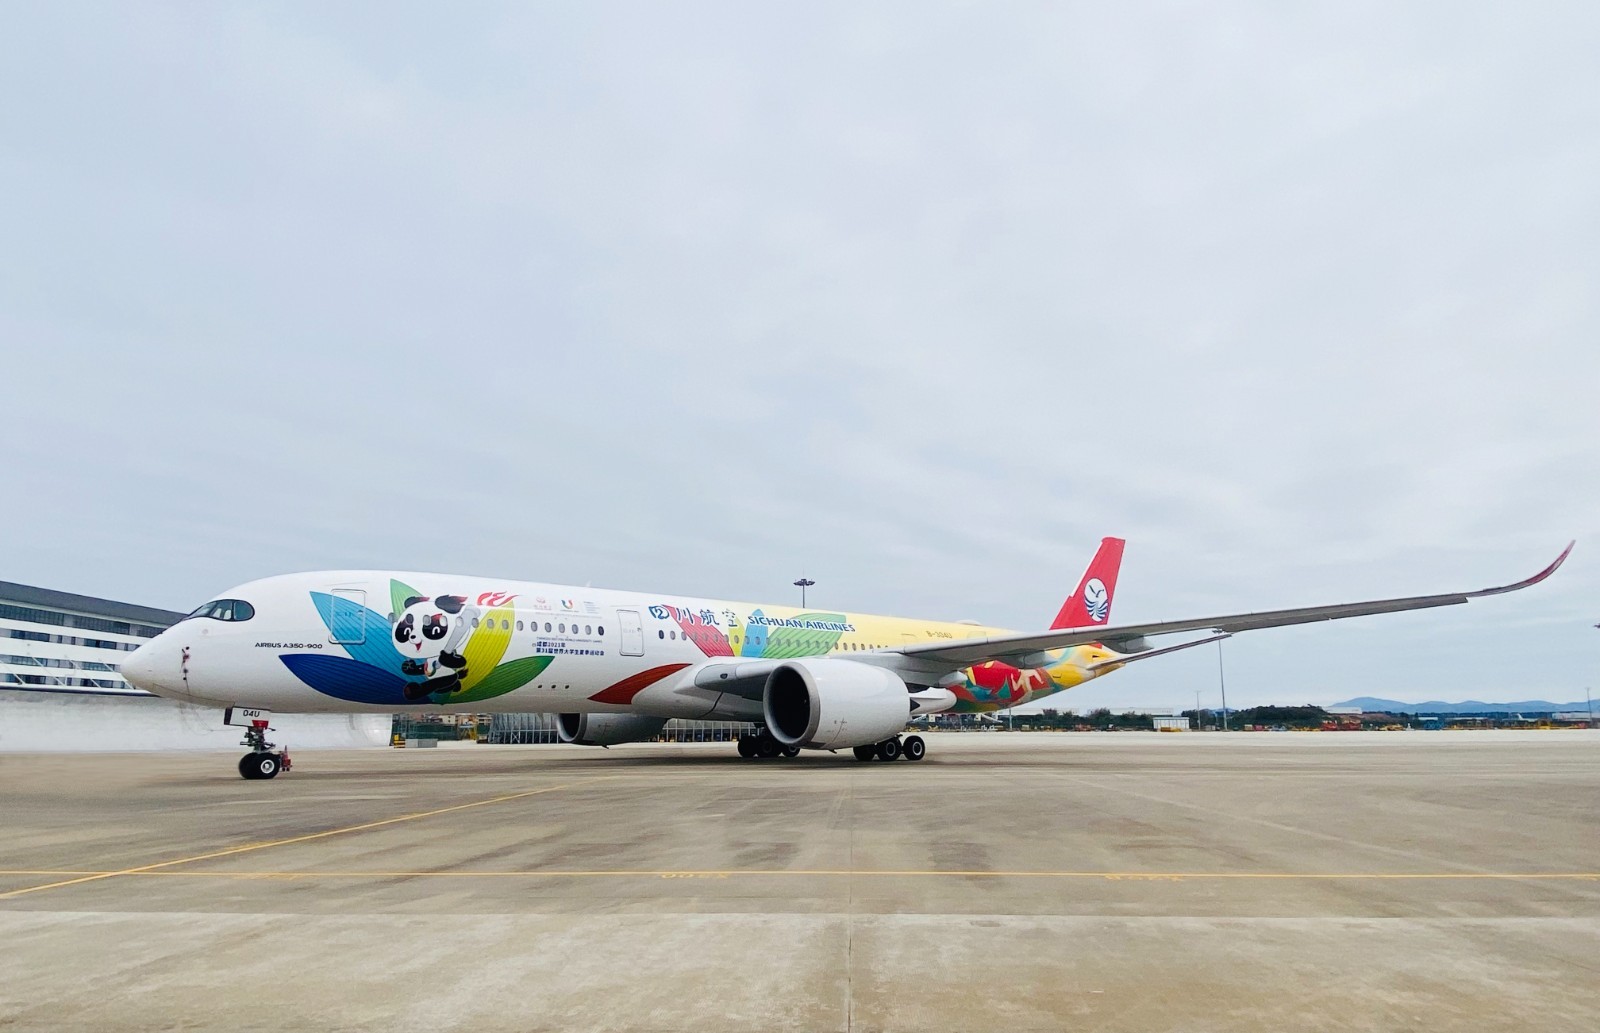 四川航空A350“大运号”主题涂装飞机亮相